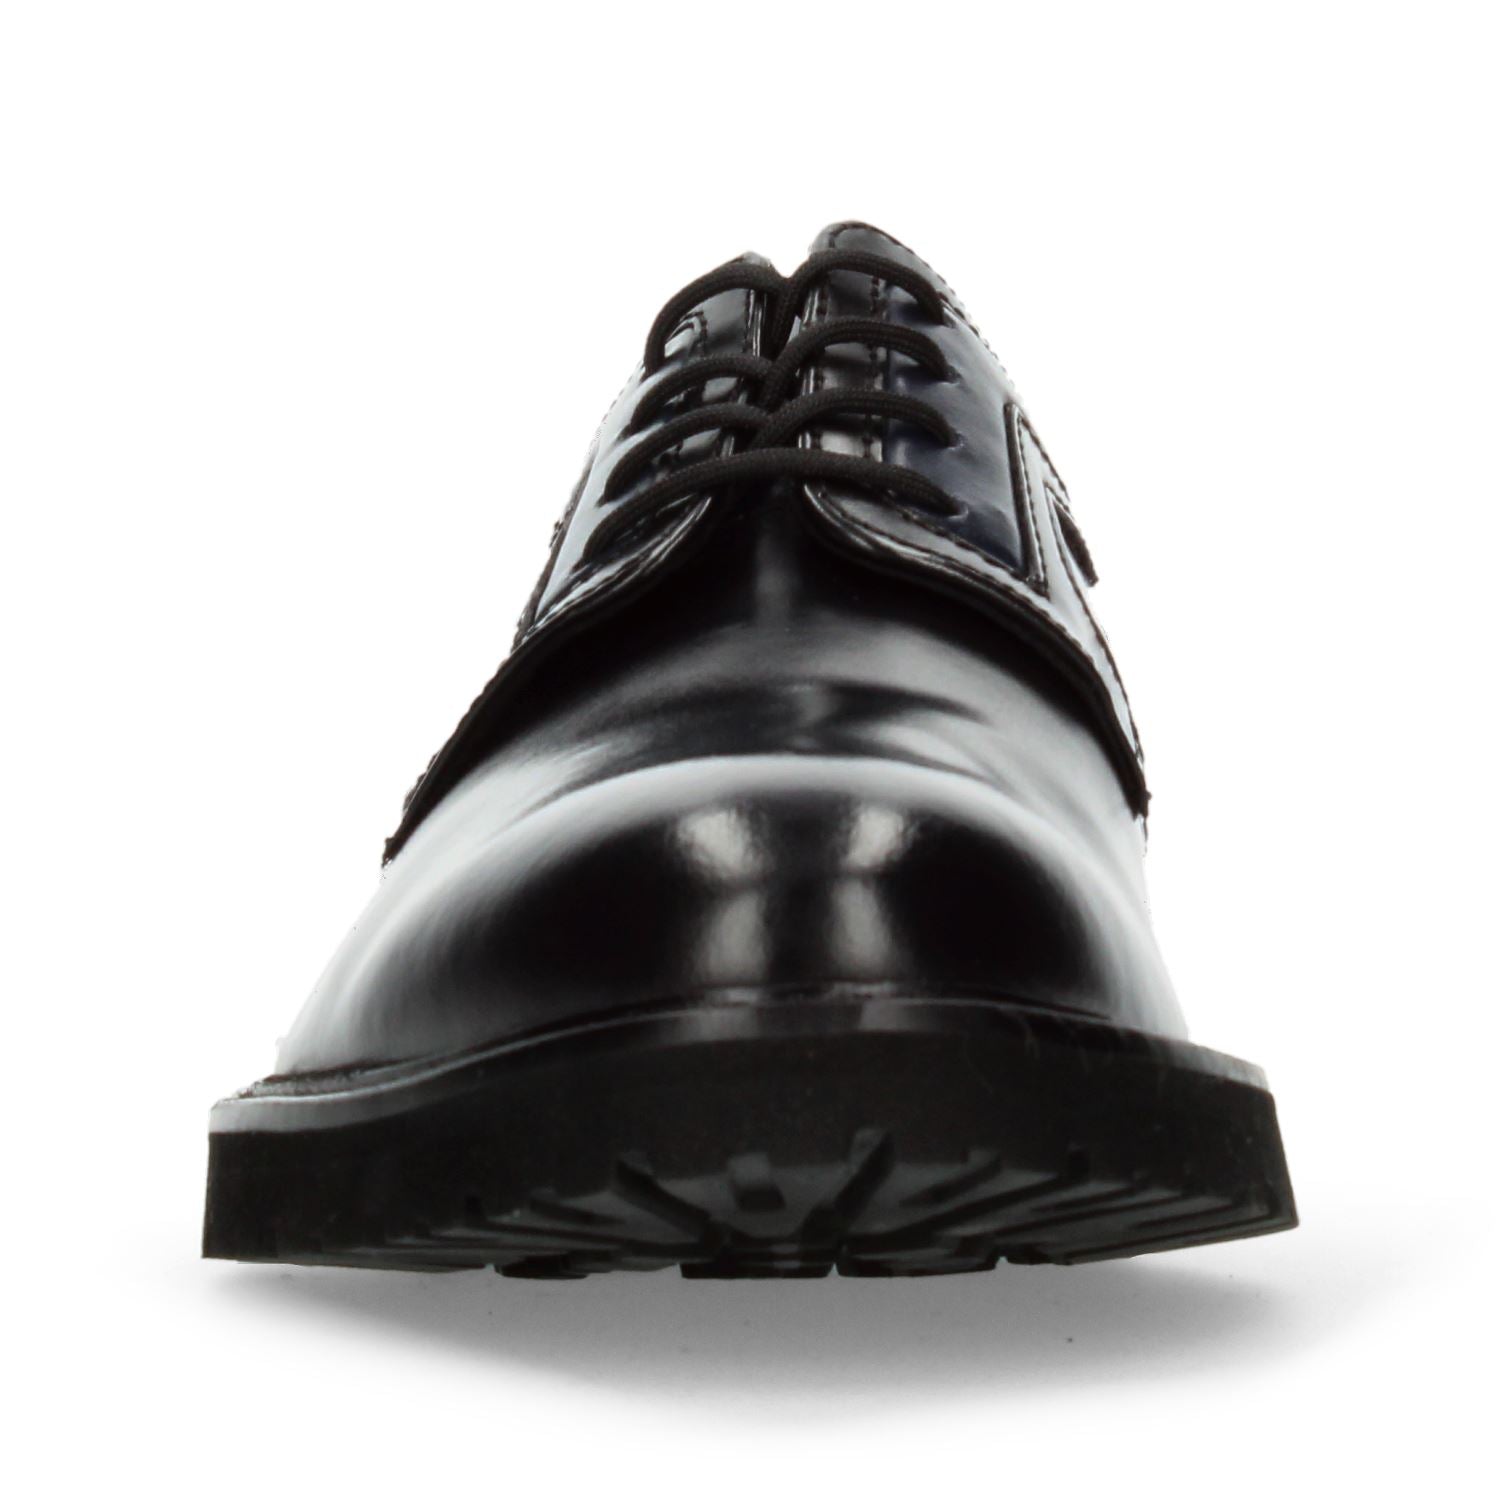 Zapato de Vestir Gino cherruti para Hombre 5005 Negro [GCH324] División_Calzado GINO CHERRUTI 